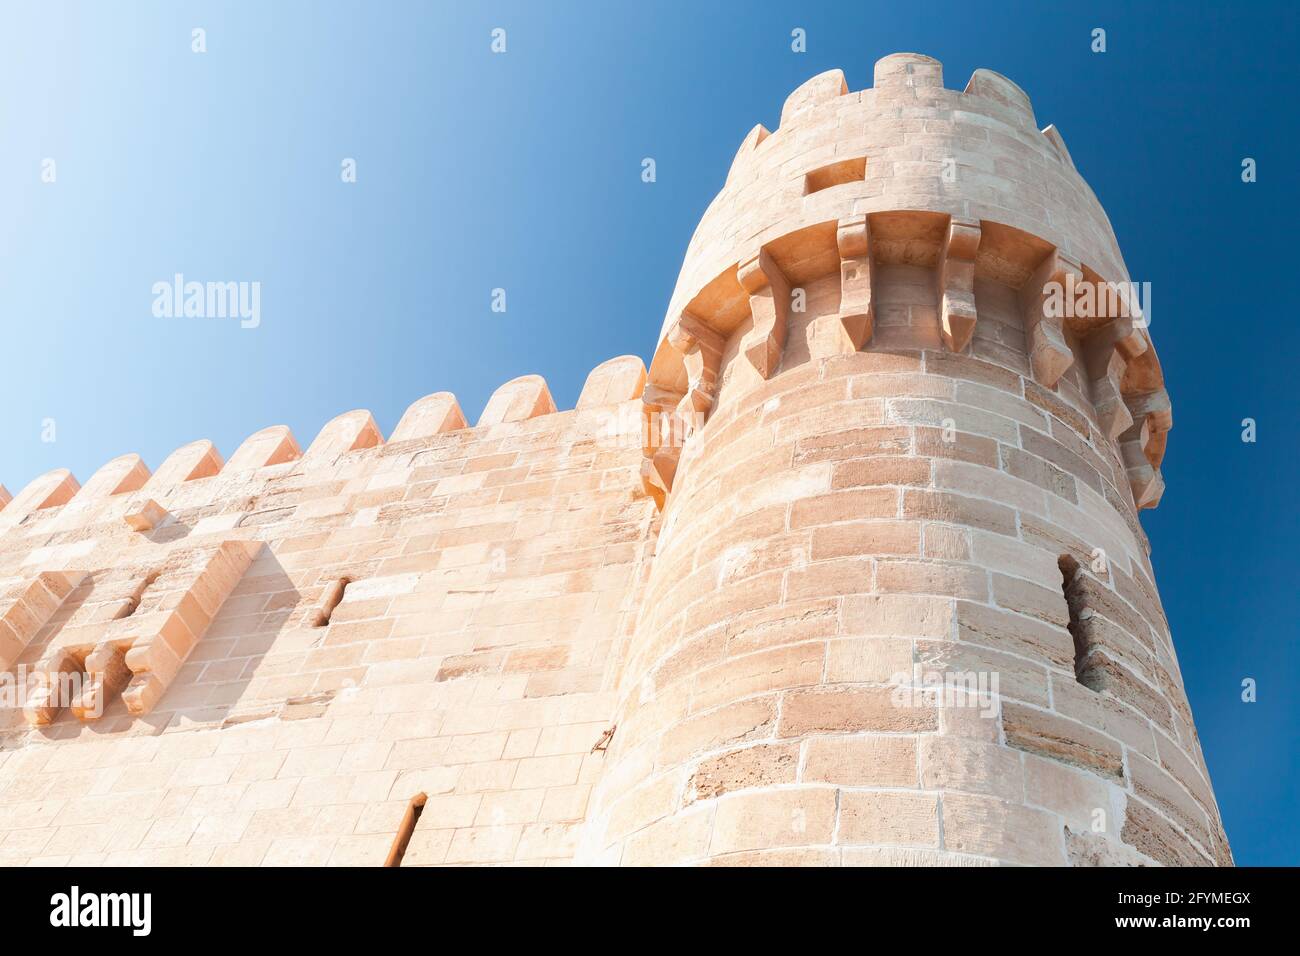 Turm der Zitadelle von Qaitbay oder Fort von Qaitbay in Alexandria, Ägypten. Es handelt sich um eine Verteidigungsfestung aus dem 15. Jahrhundert, die sich am Mittelmeer befindet Stockfoto